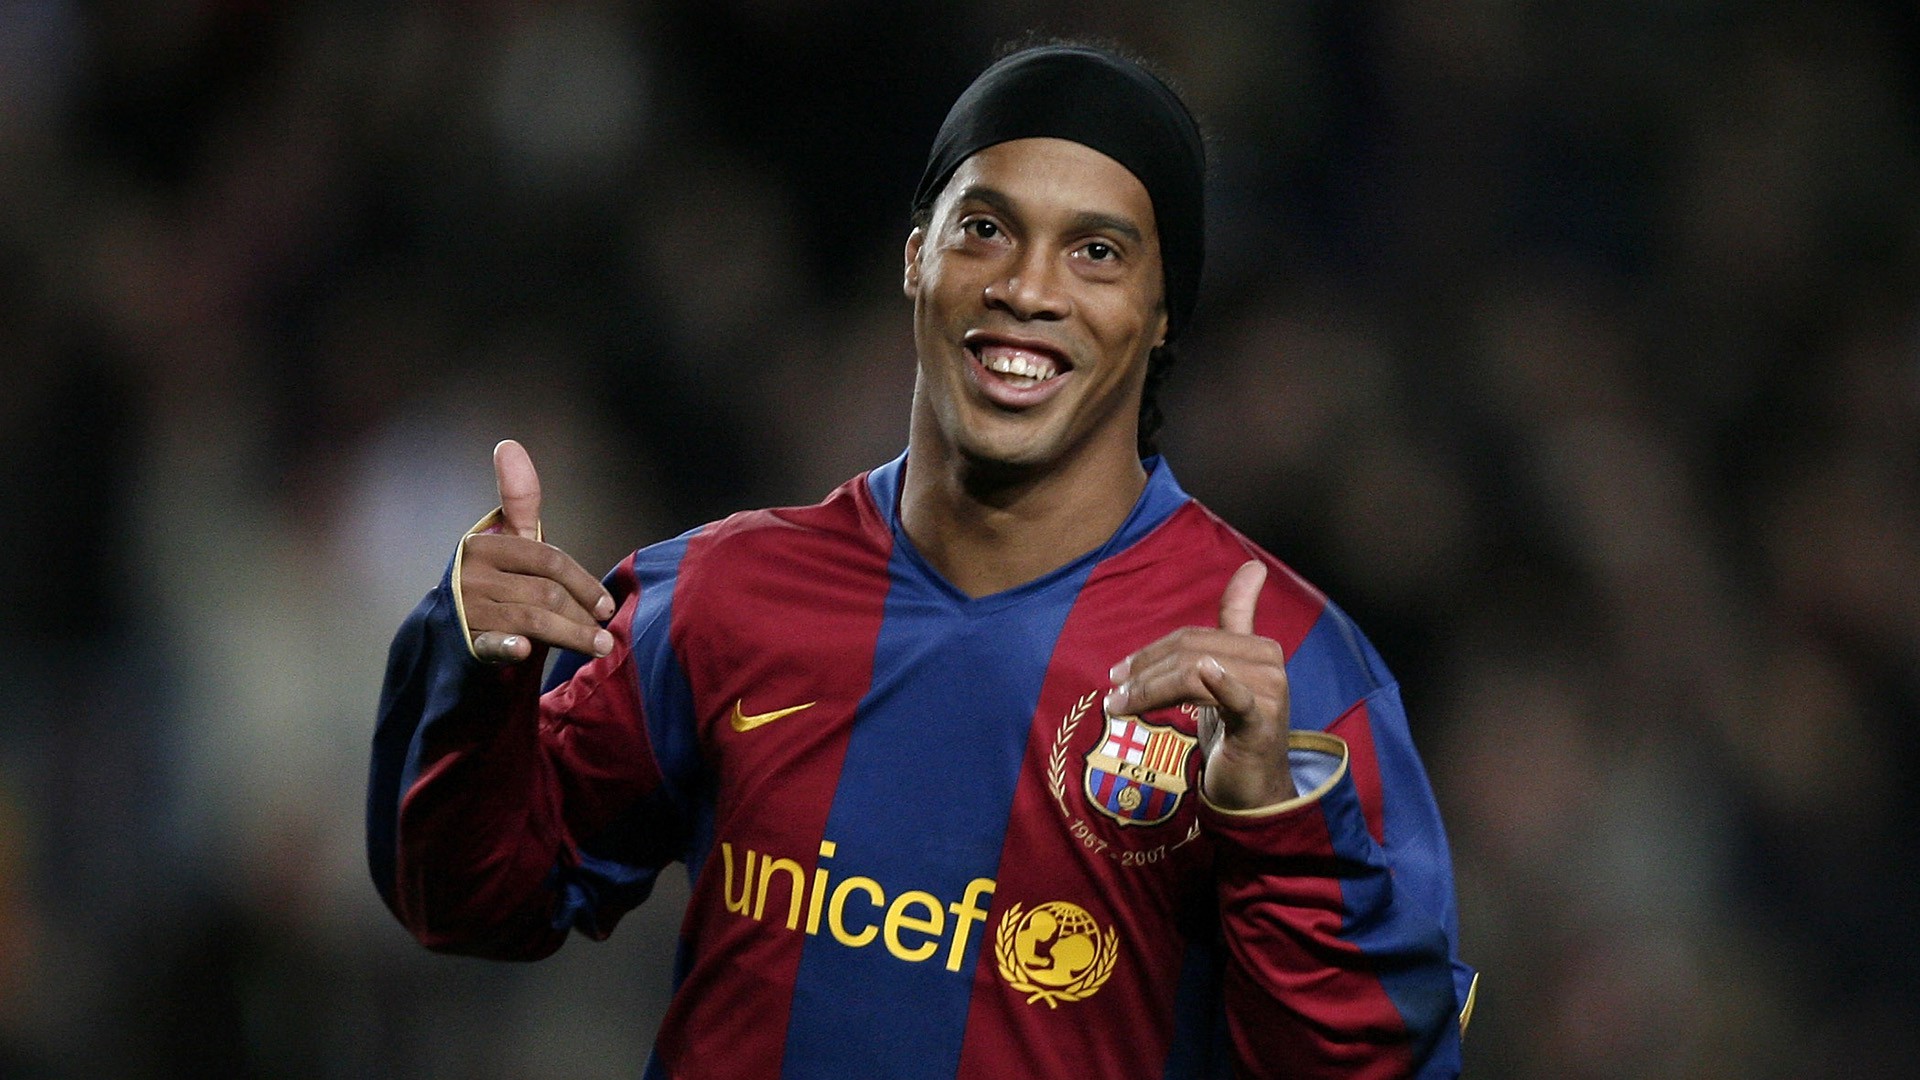 Ronaldinho - một cái tên đã trở nên quá nổi tiếng trong làng bóng đá hàng đầu! Hãy cùng xem hình ảnh của ông ta trong những trận đấu đỉnh cao để thấy được tài năng và sự khác biệt tạo nên \